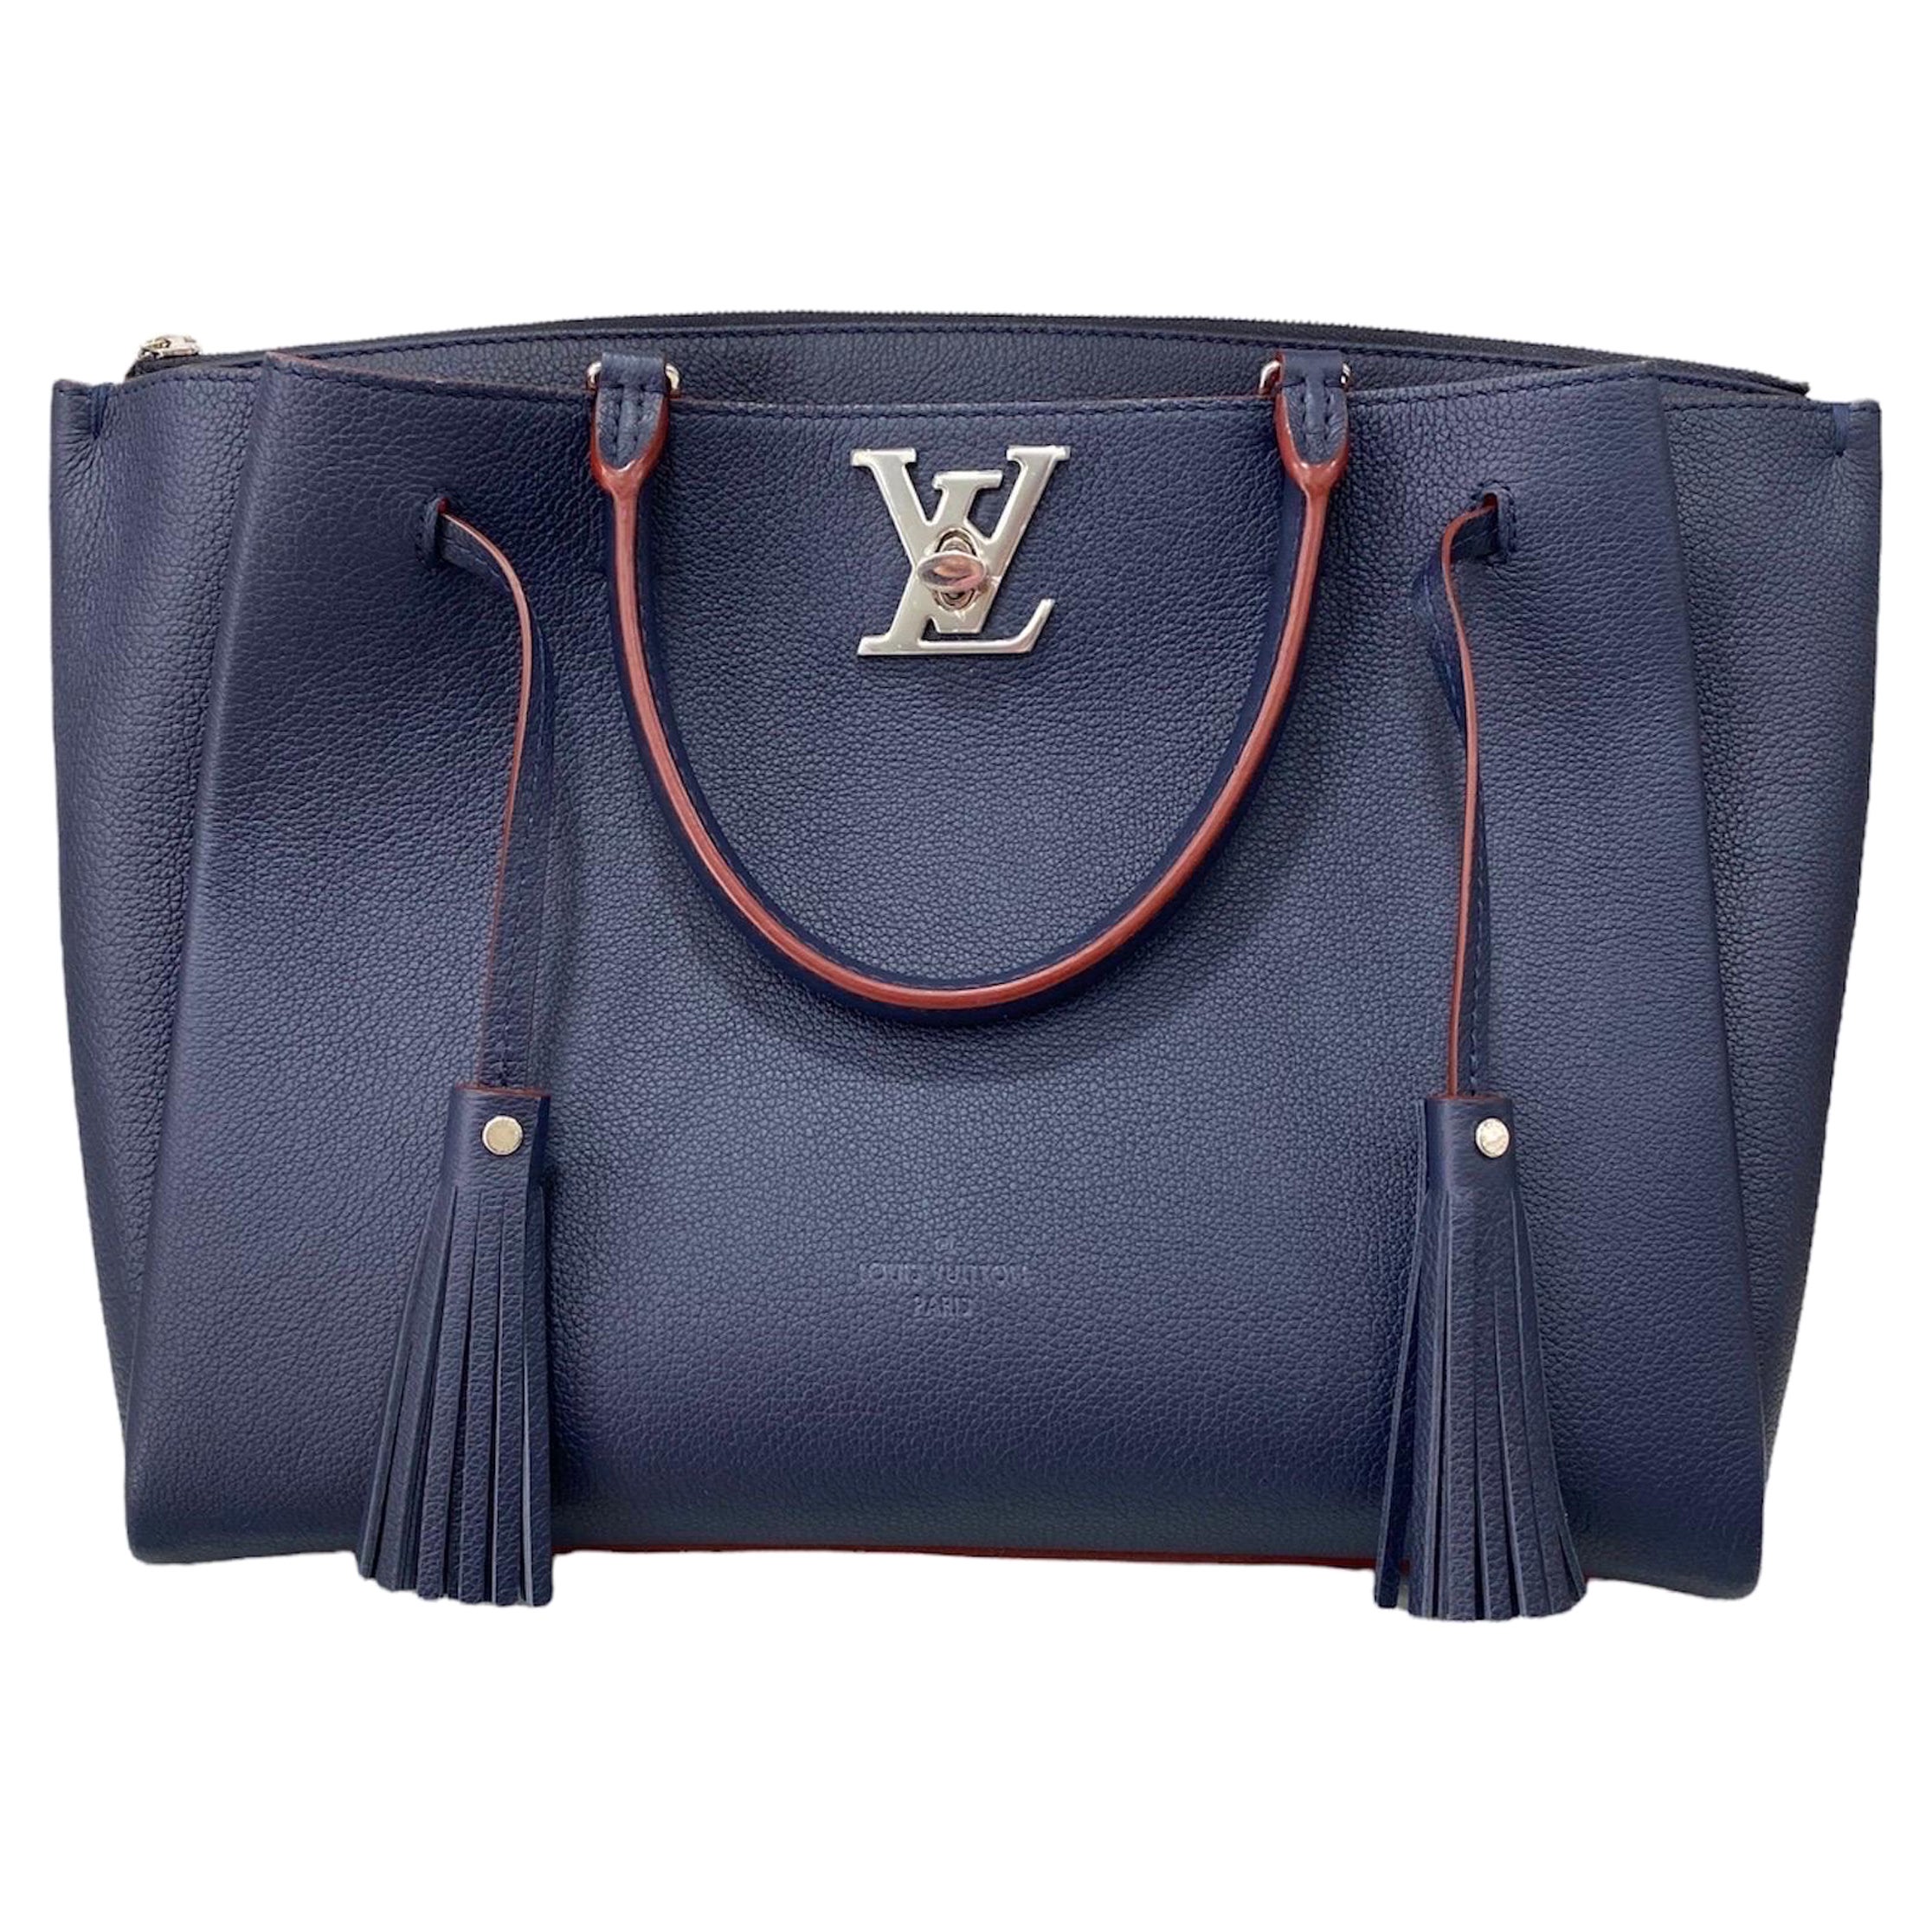 Louis Vuitton - Authenticated Lockme Purse - Leather Blue Plain for Women, Good Condition